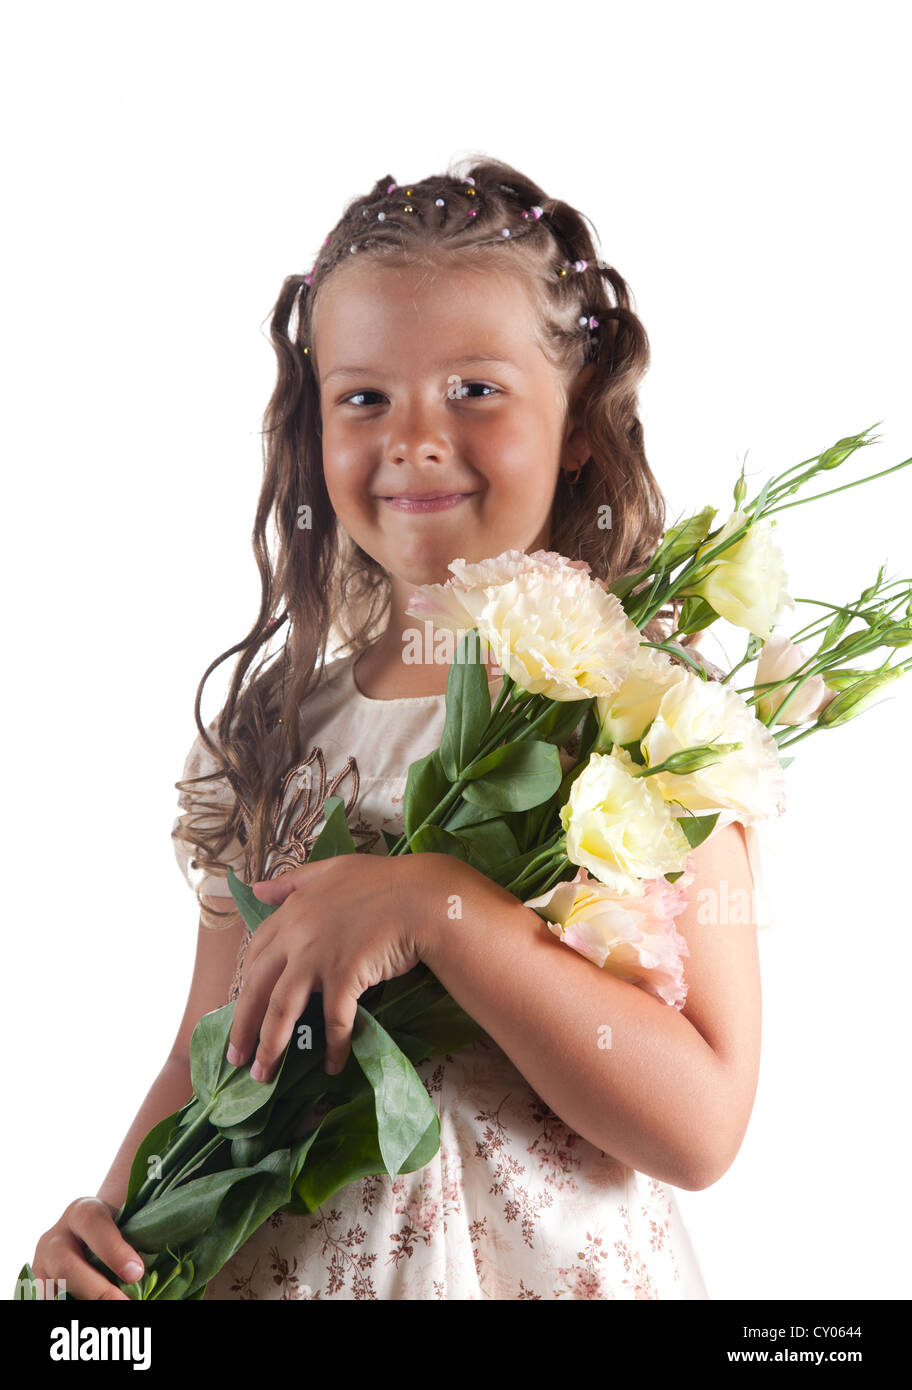 Kleines Mädchen mit Zopf Frisur hält Blumen Lächeln, isoliert auf weißem Hintergrund Stockfoto